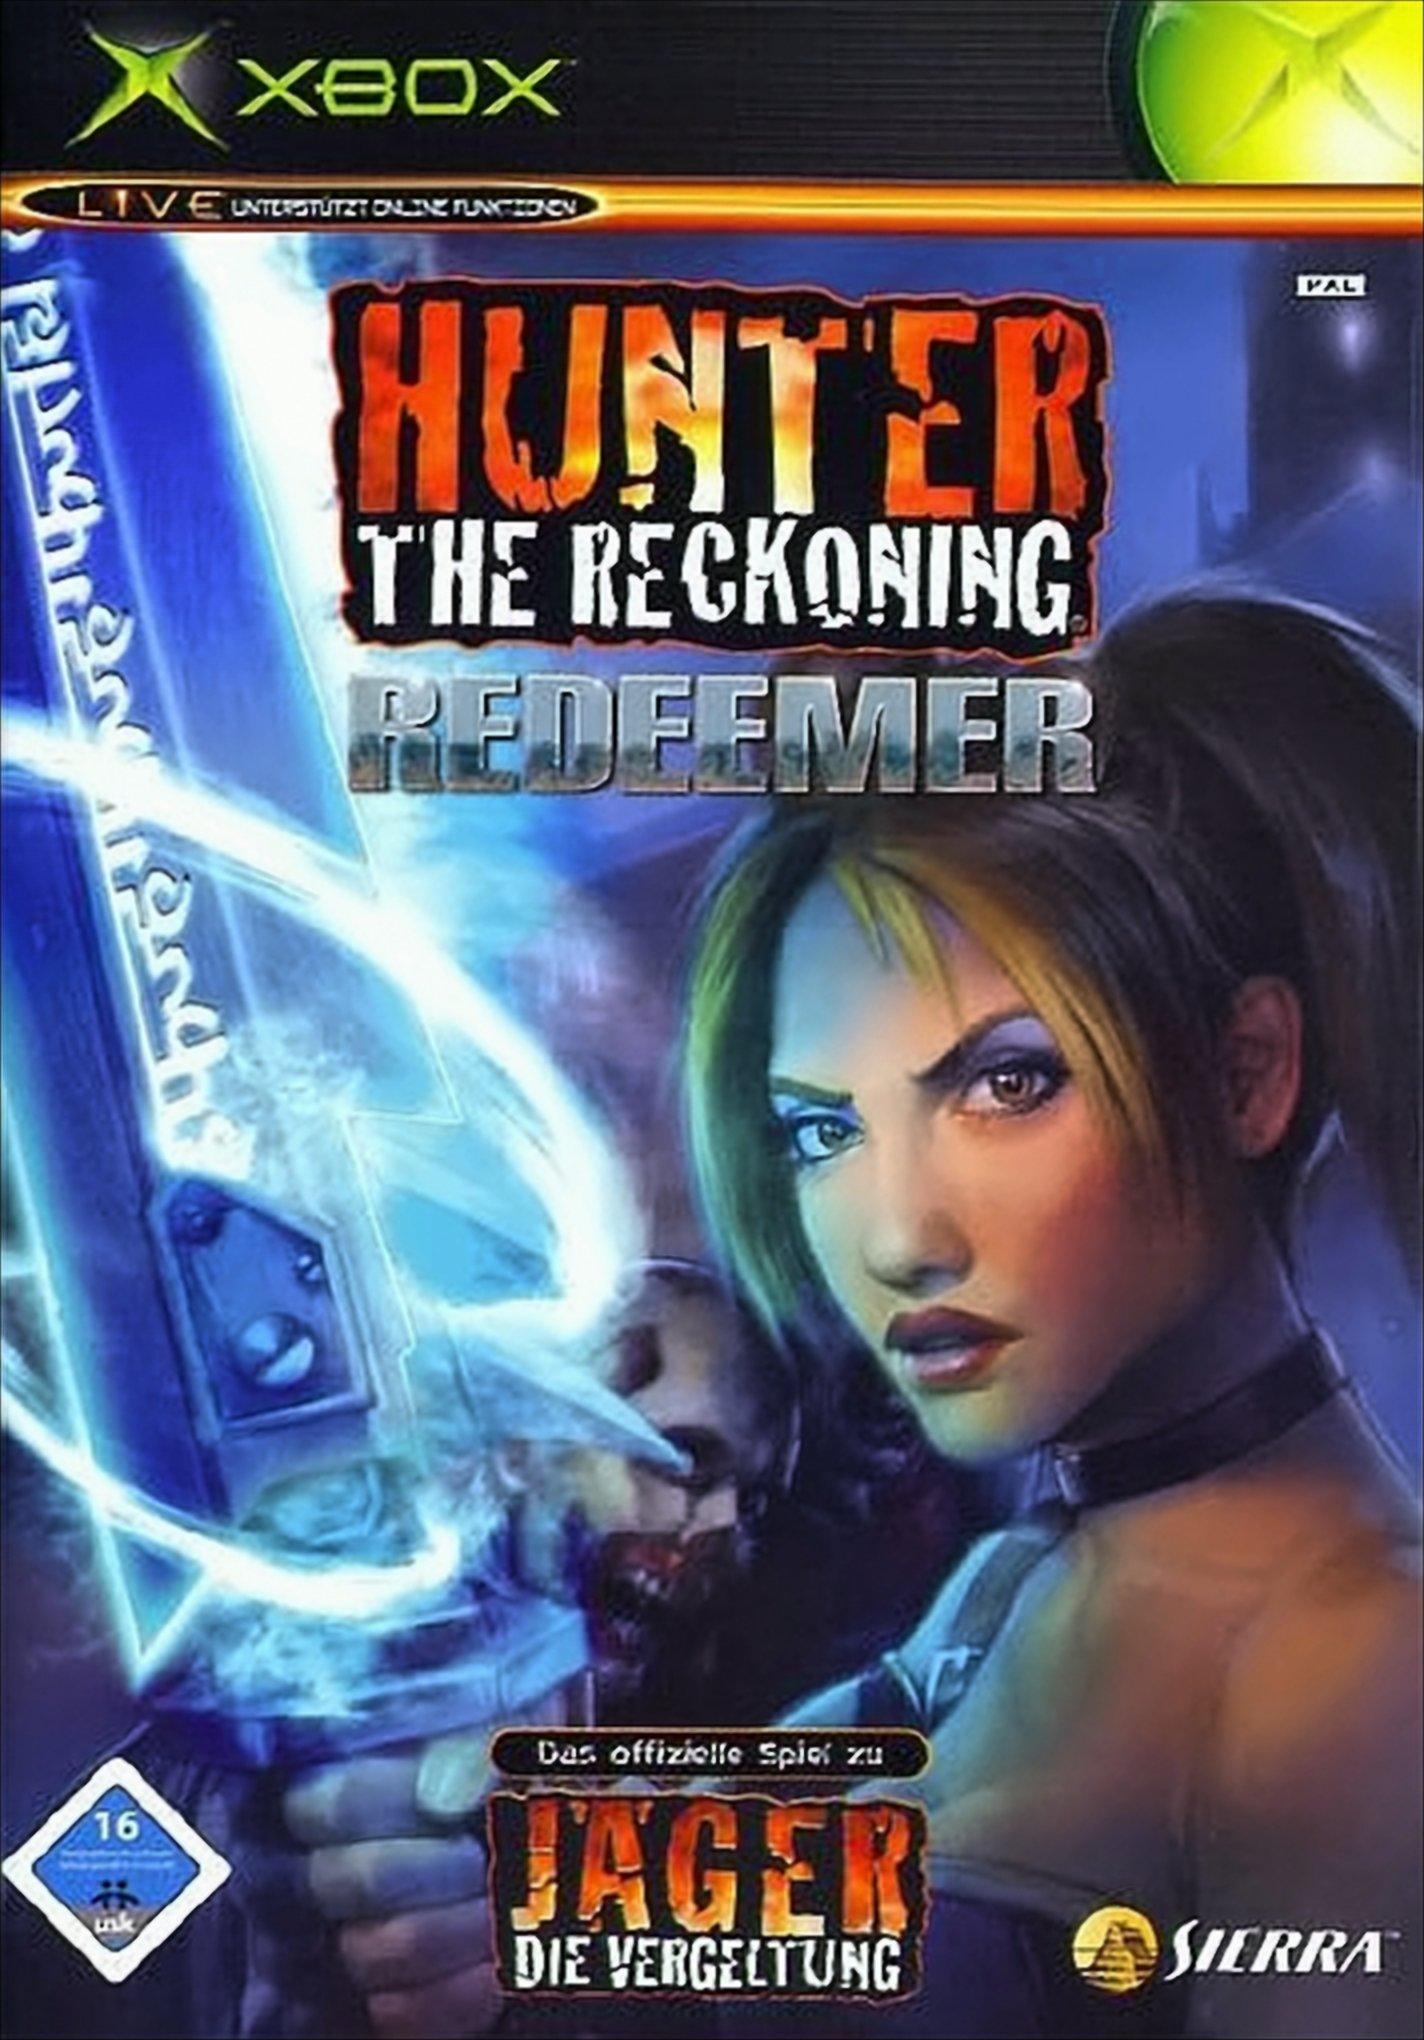 Hunter - The Reckoning: Redeemer von Activision Blizzard Deutschland